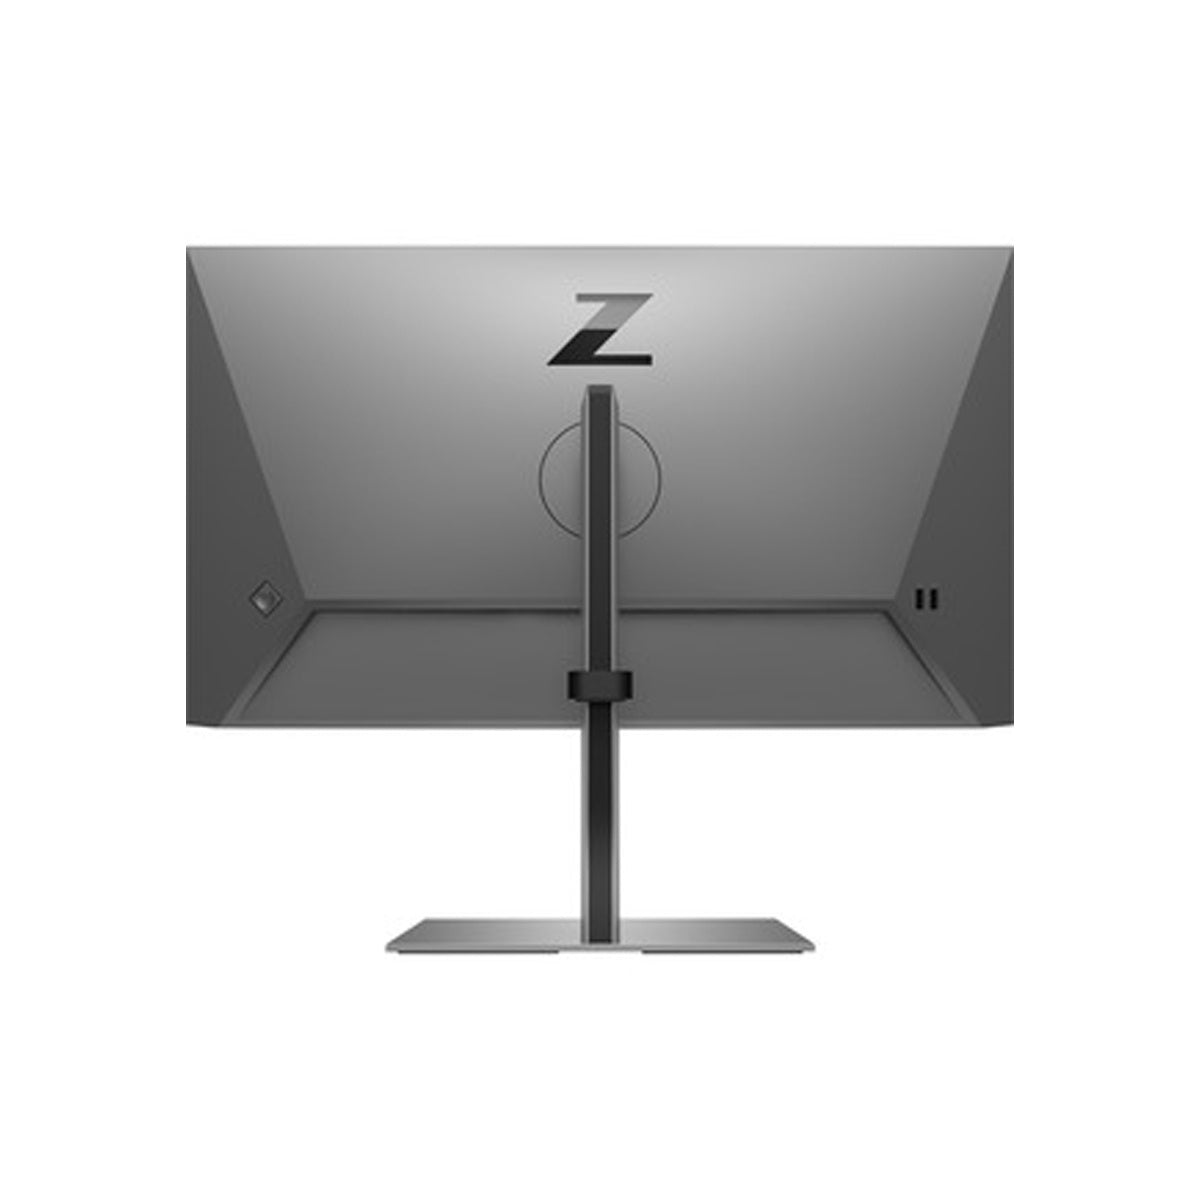 Monitor HP Z24f G3 23.8" Full HD LCD